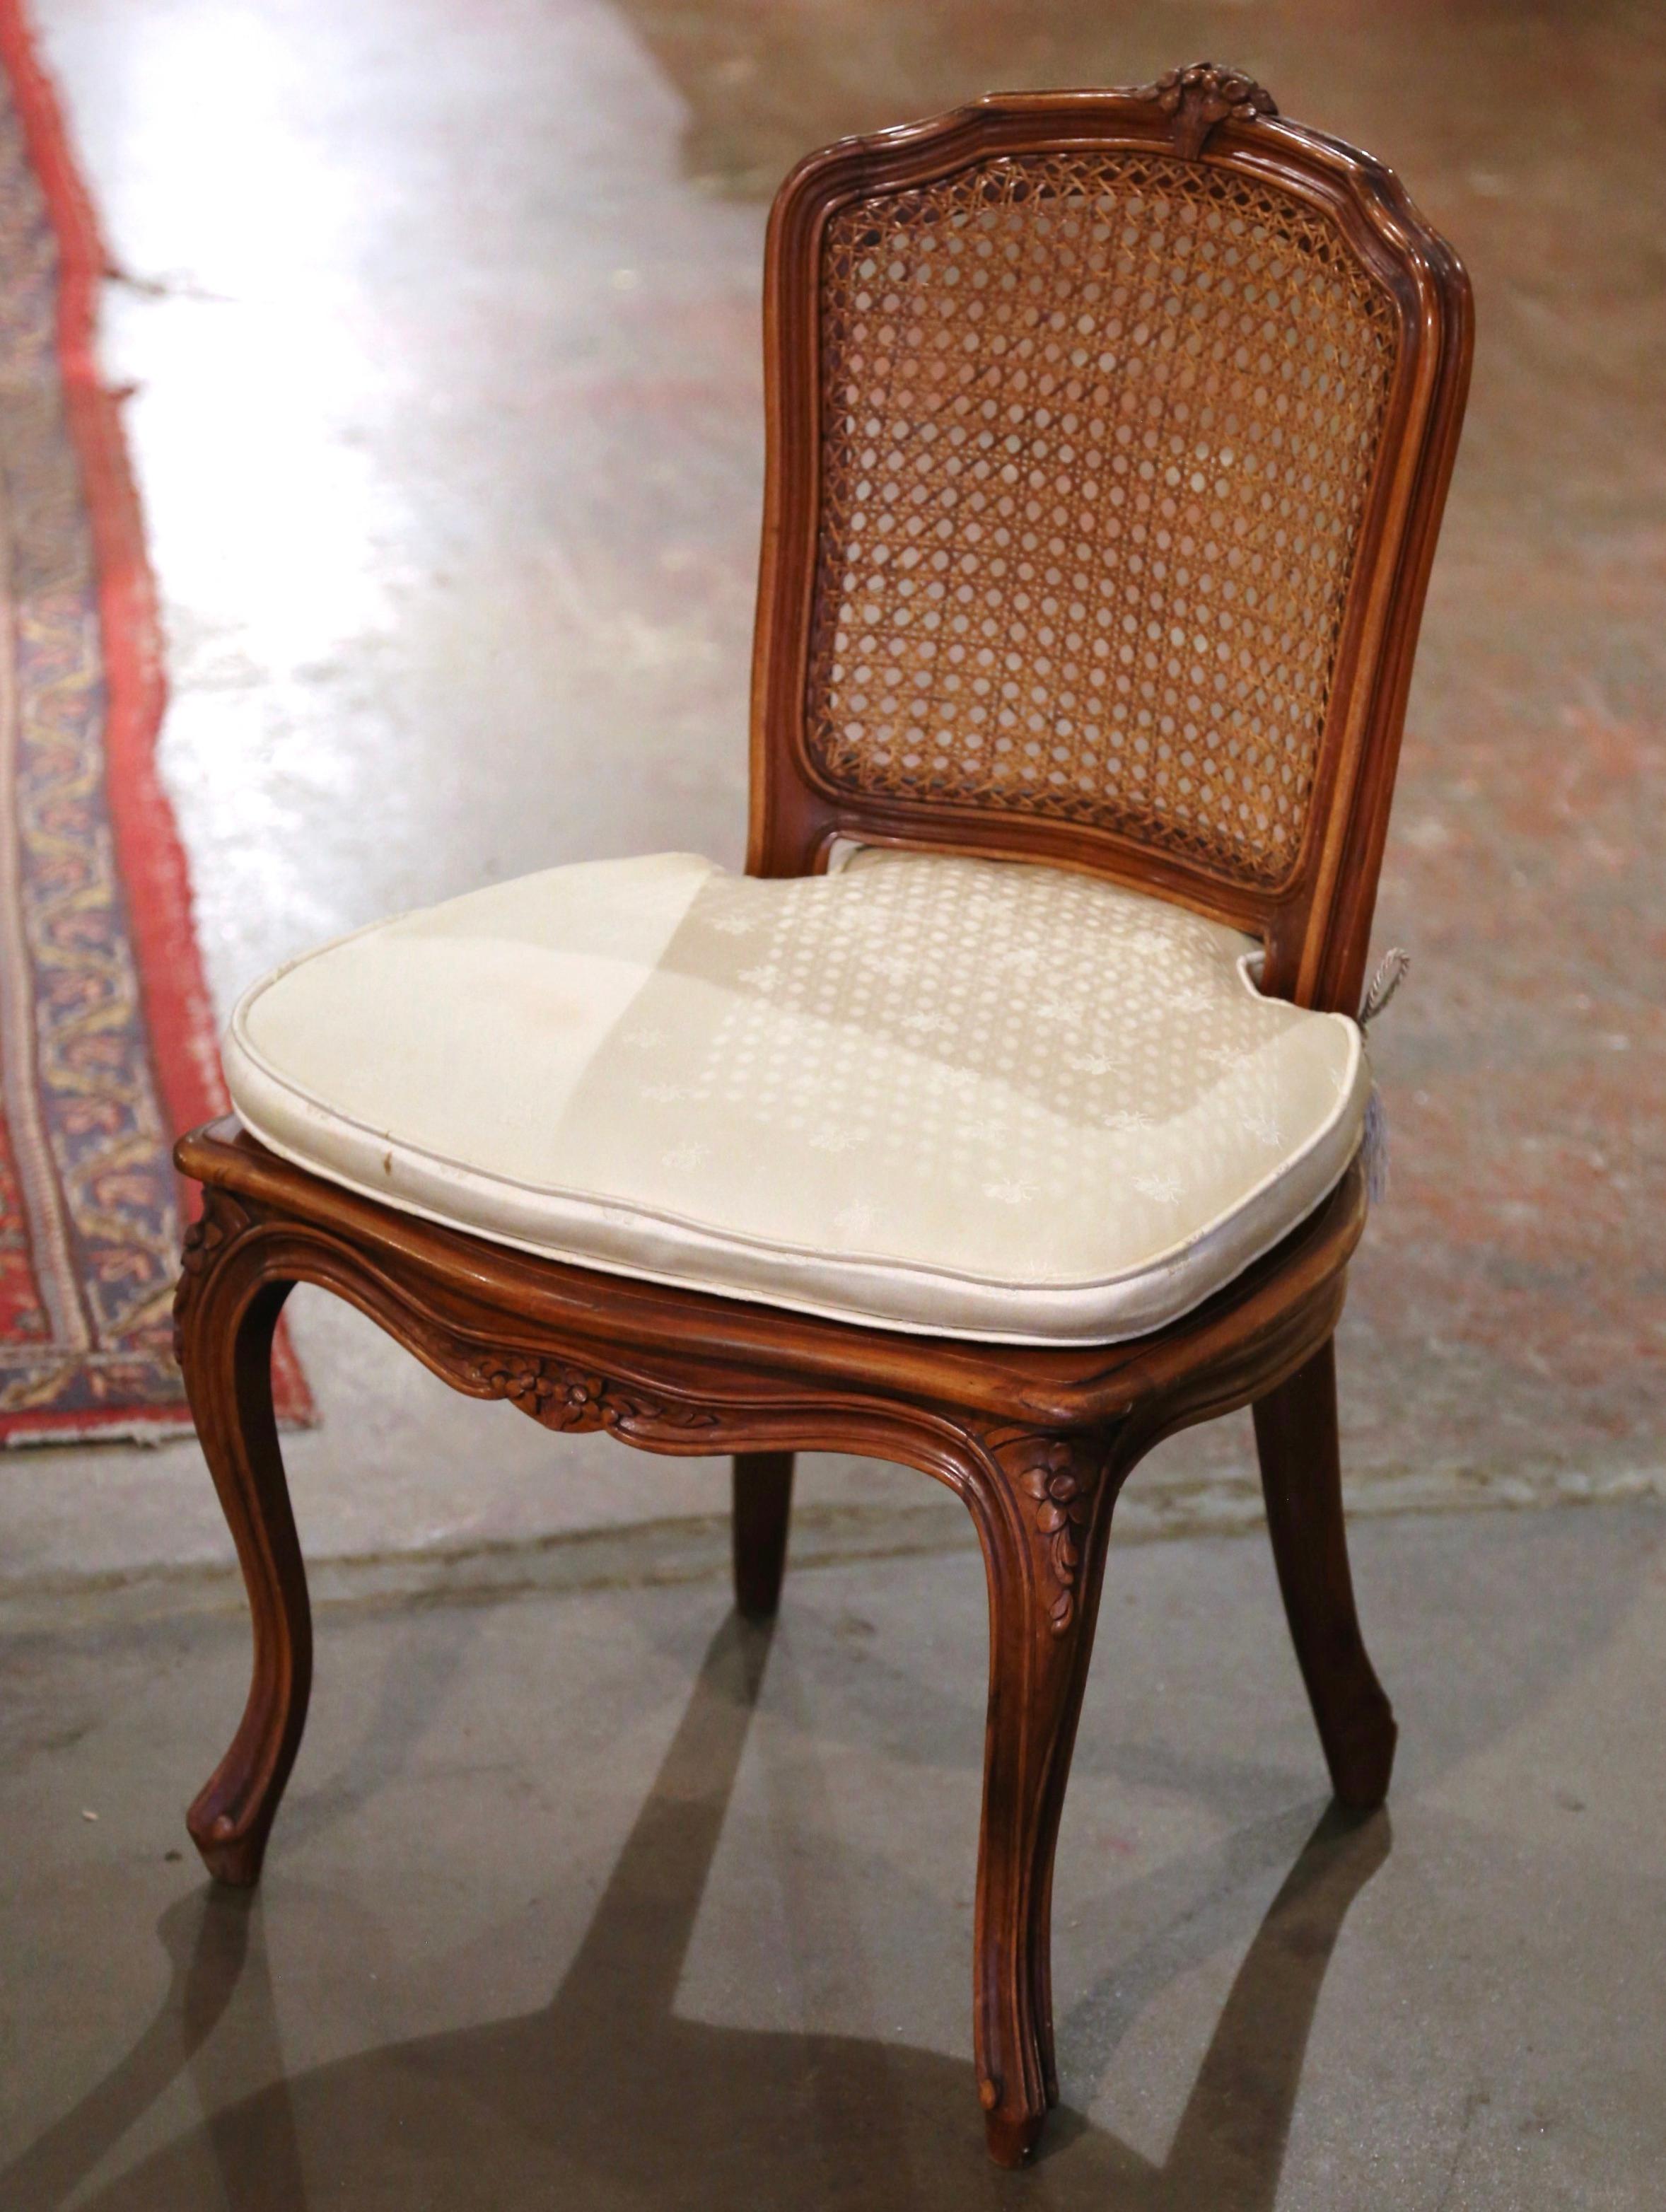 Ajoutez du charme à un salon familial ou à une chambre d'enfant avec cette élégante chaise basse. Fabriquée en France vers 1970 et joliment sculptée, cette chaise ancienne repose sur des pieds cabriole décorés de médaillons floraux à l'épaule,